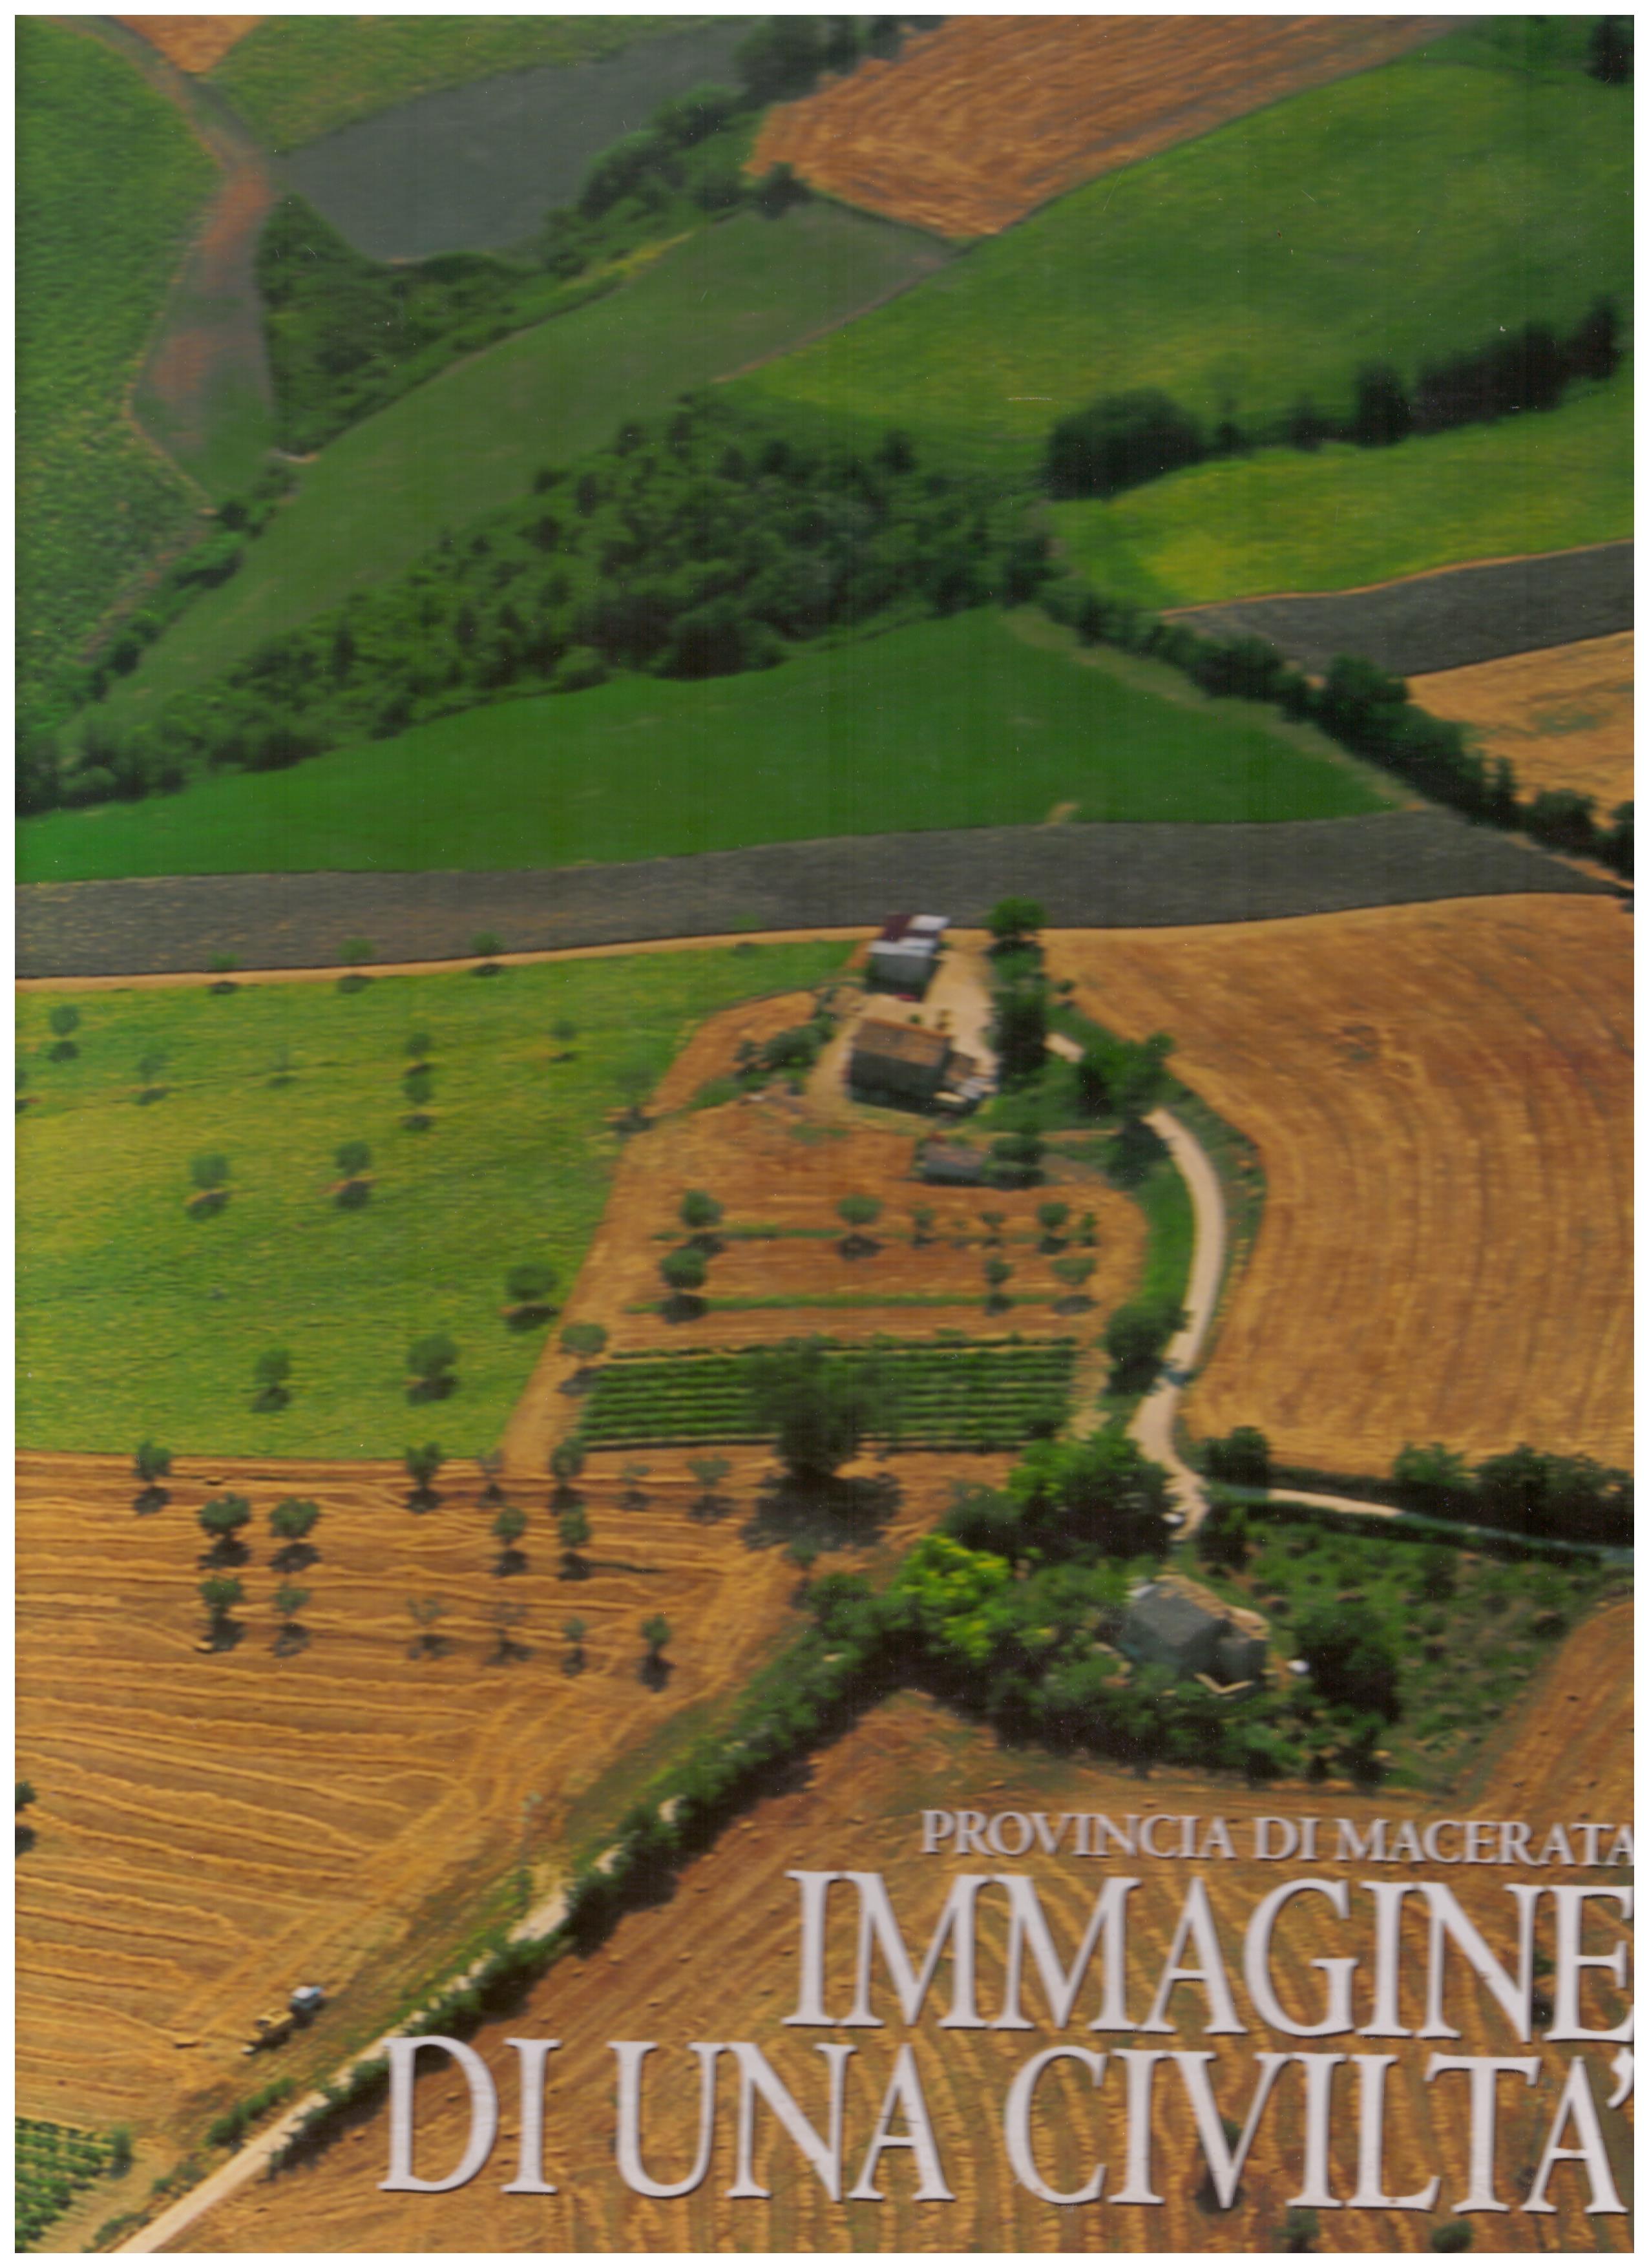 Titolo: Immagine di una civiltà     Autore: AA.VV.     Editore: Italia Turistica, 1998